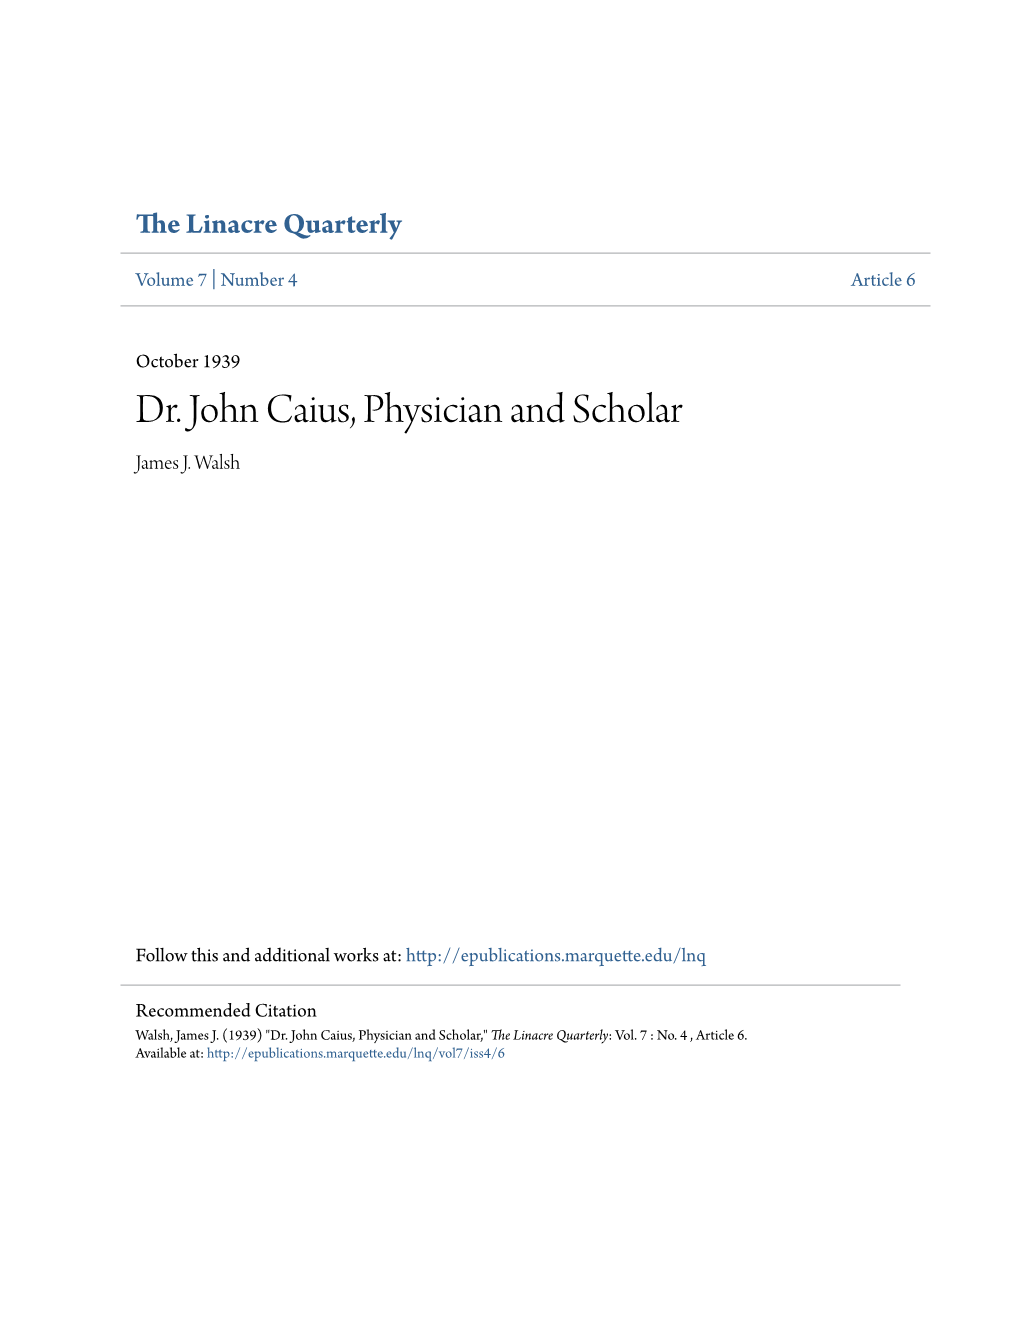 Dr. John Caius, Physician and Scholar James J